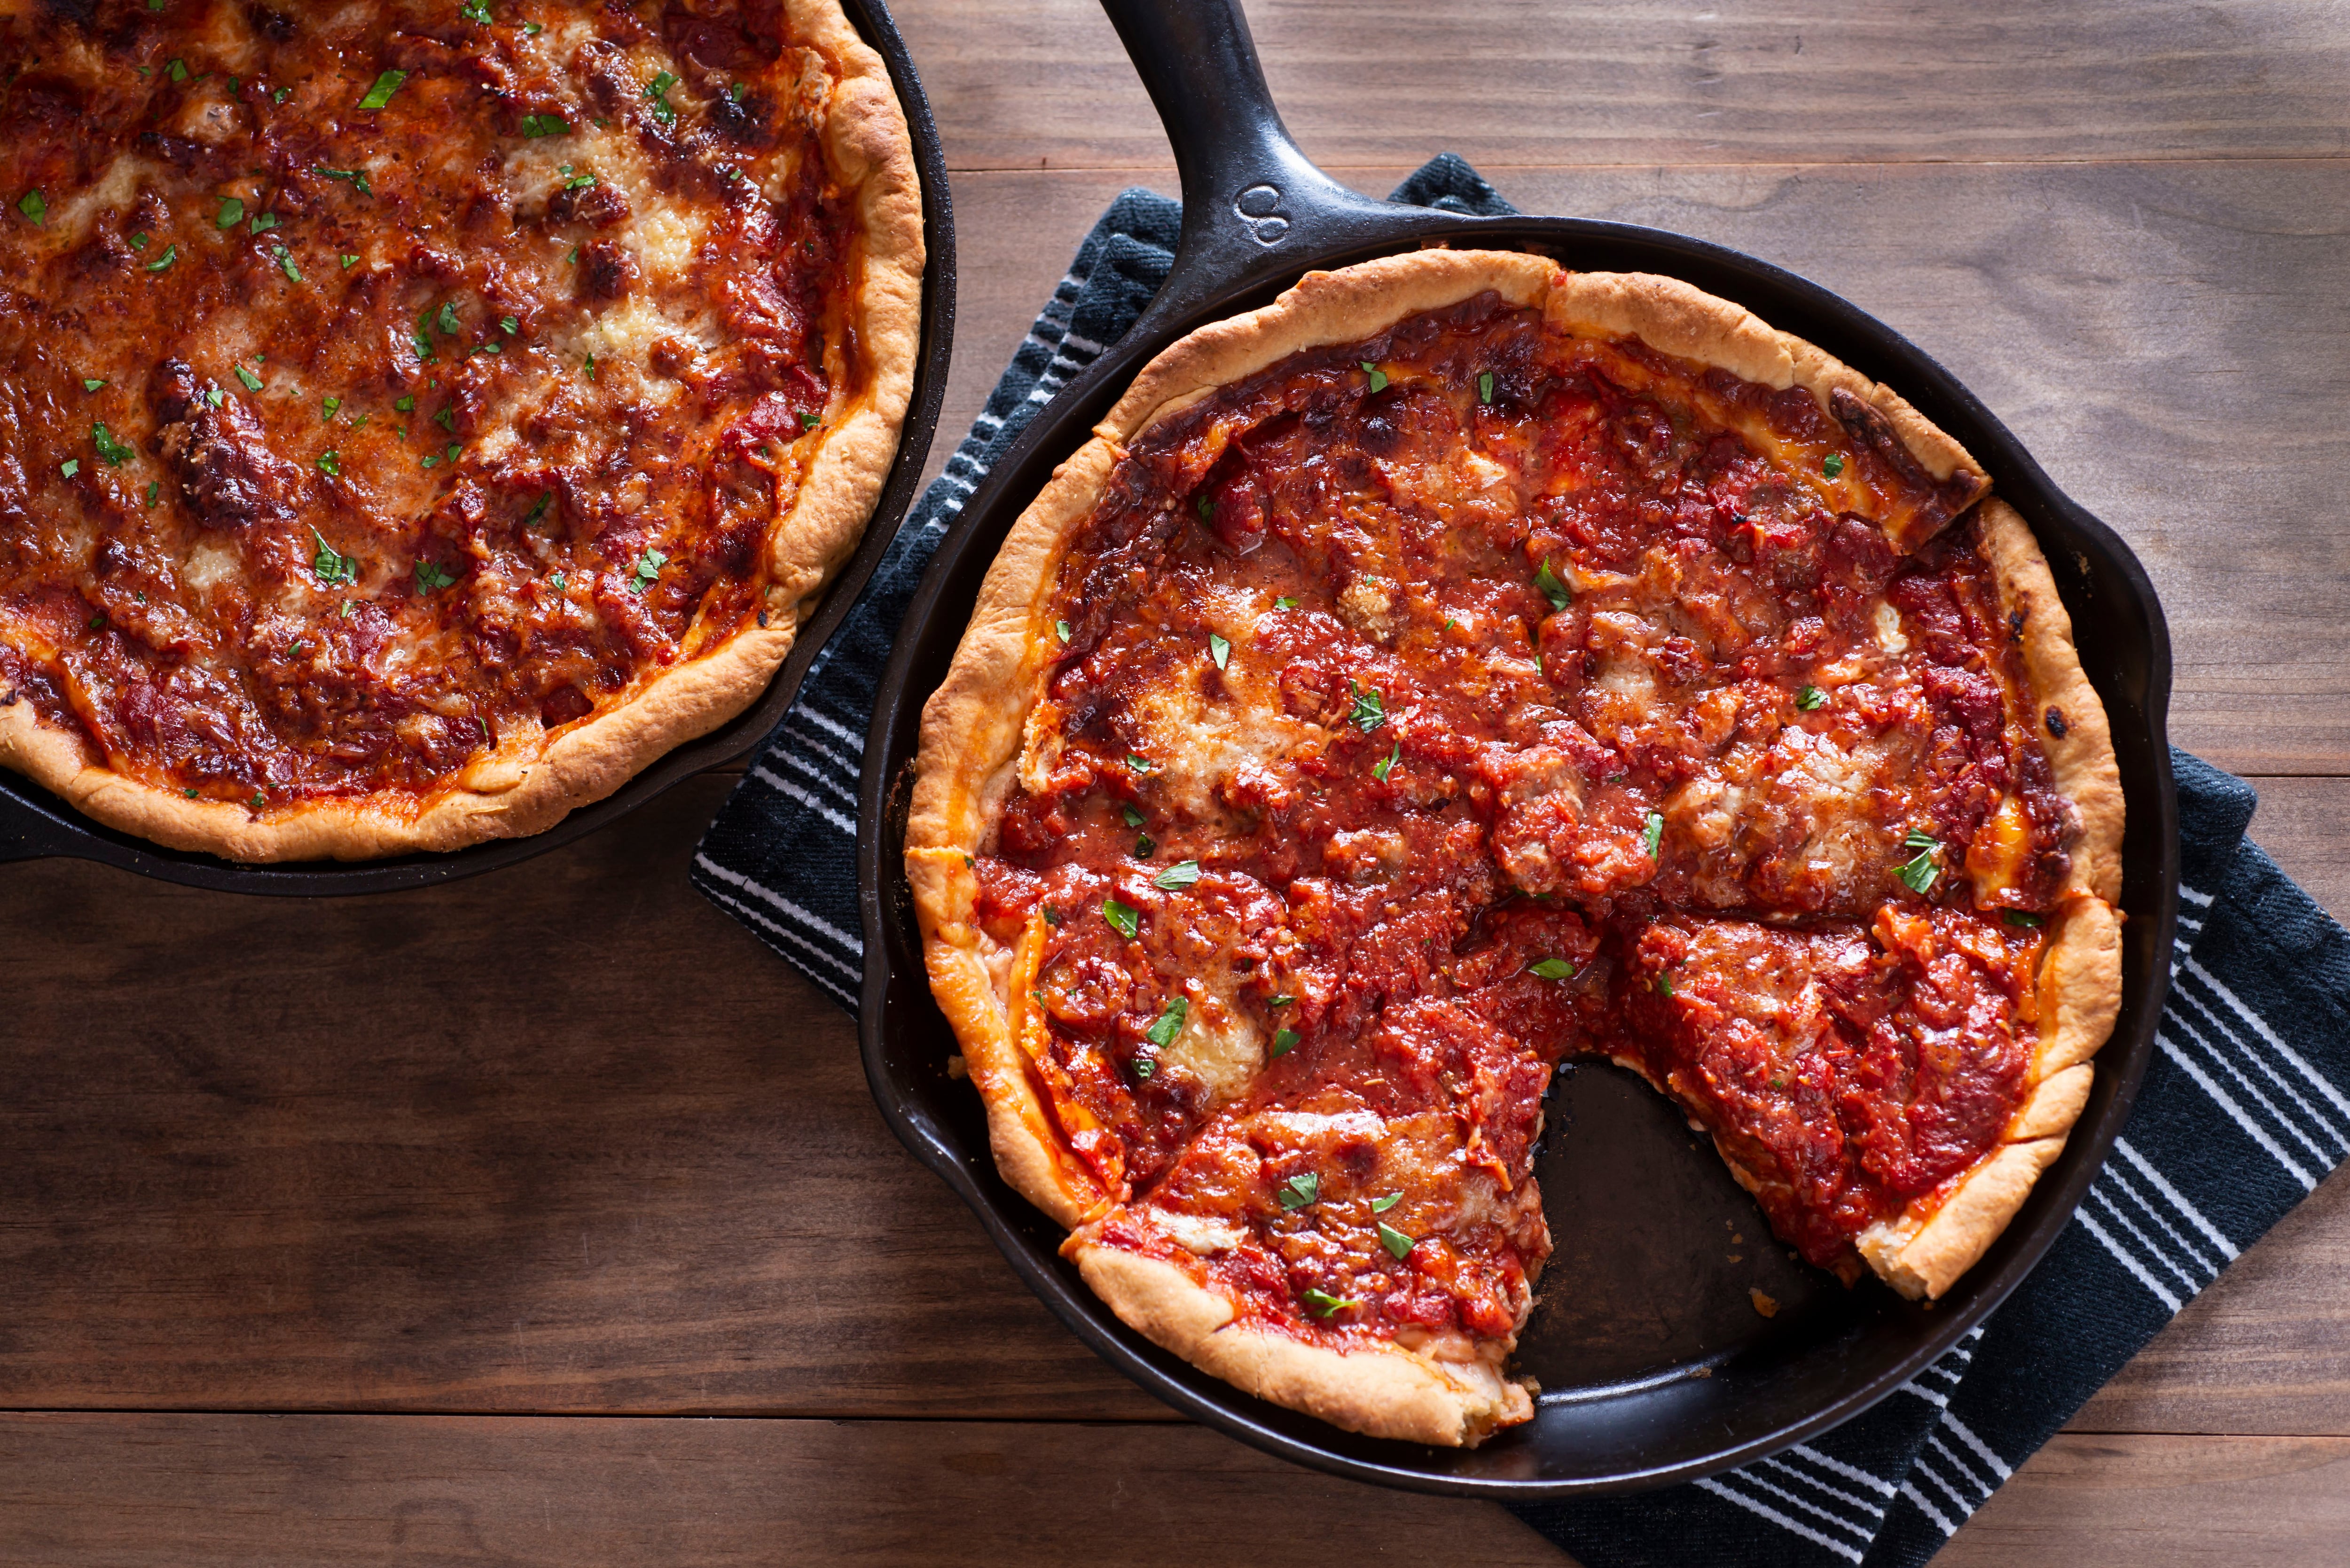 Receta: ¿cómo se prepara una Deep dish pizza? | EL ESPECTADOR